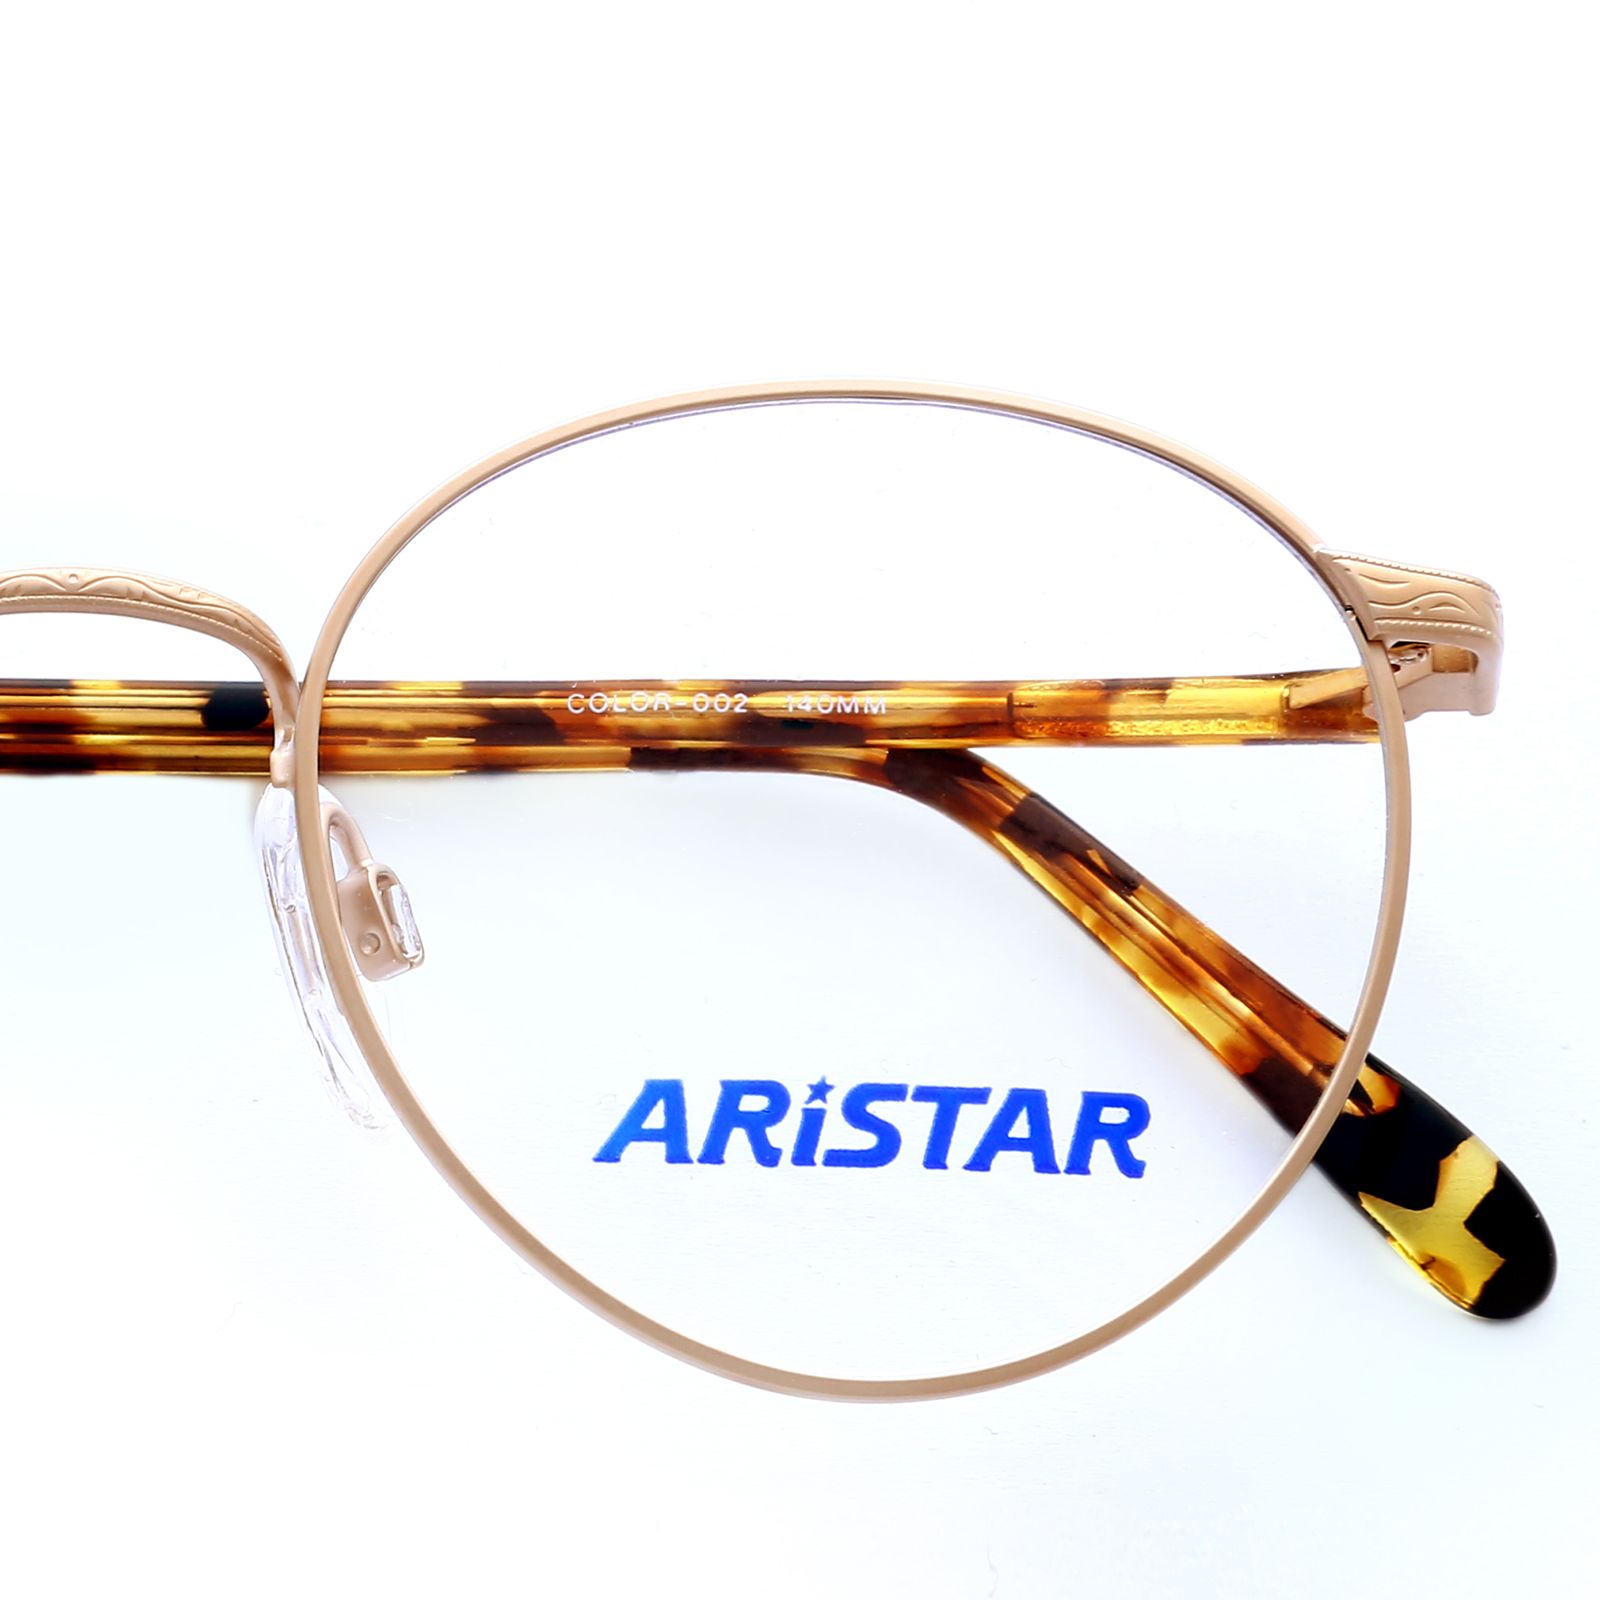 فریم عینک طبی آریستار مدل 6305 -  - 3